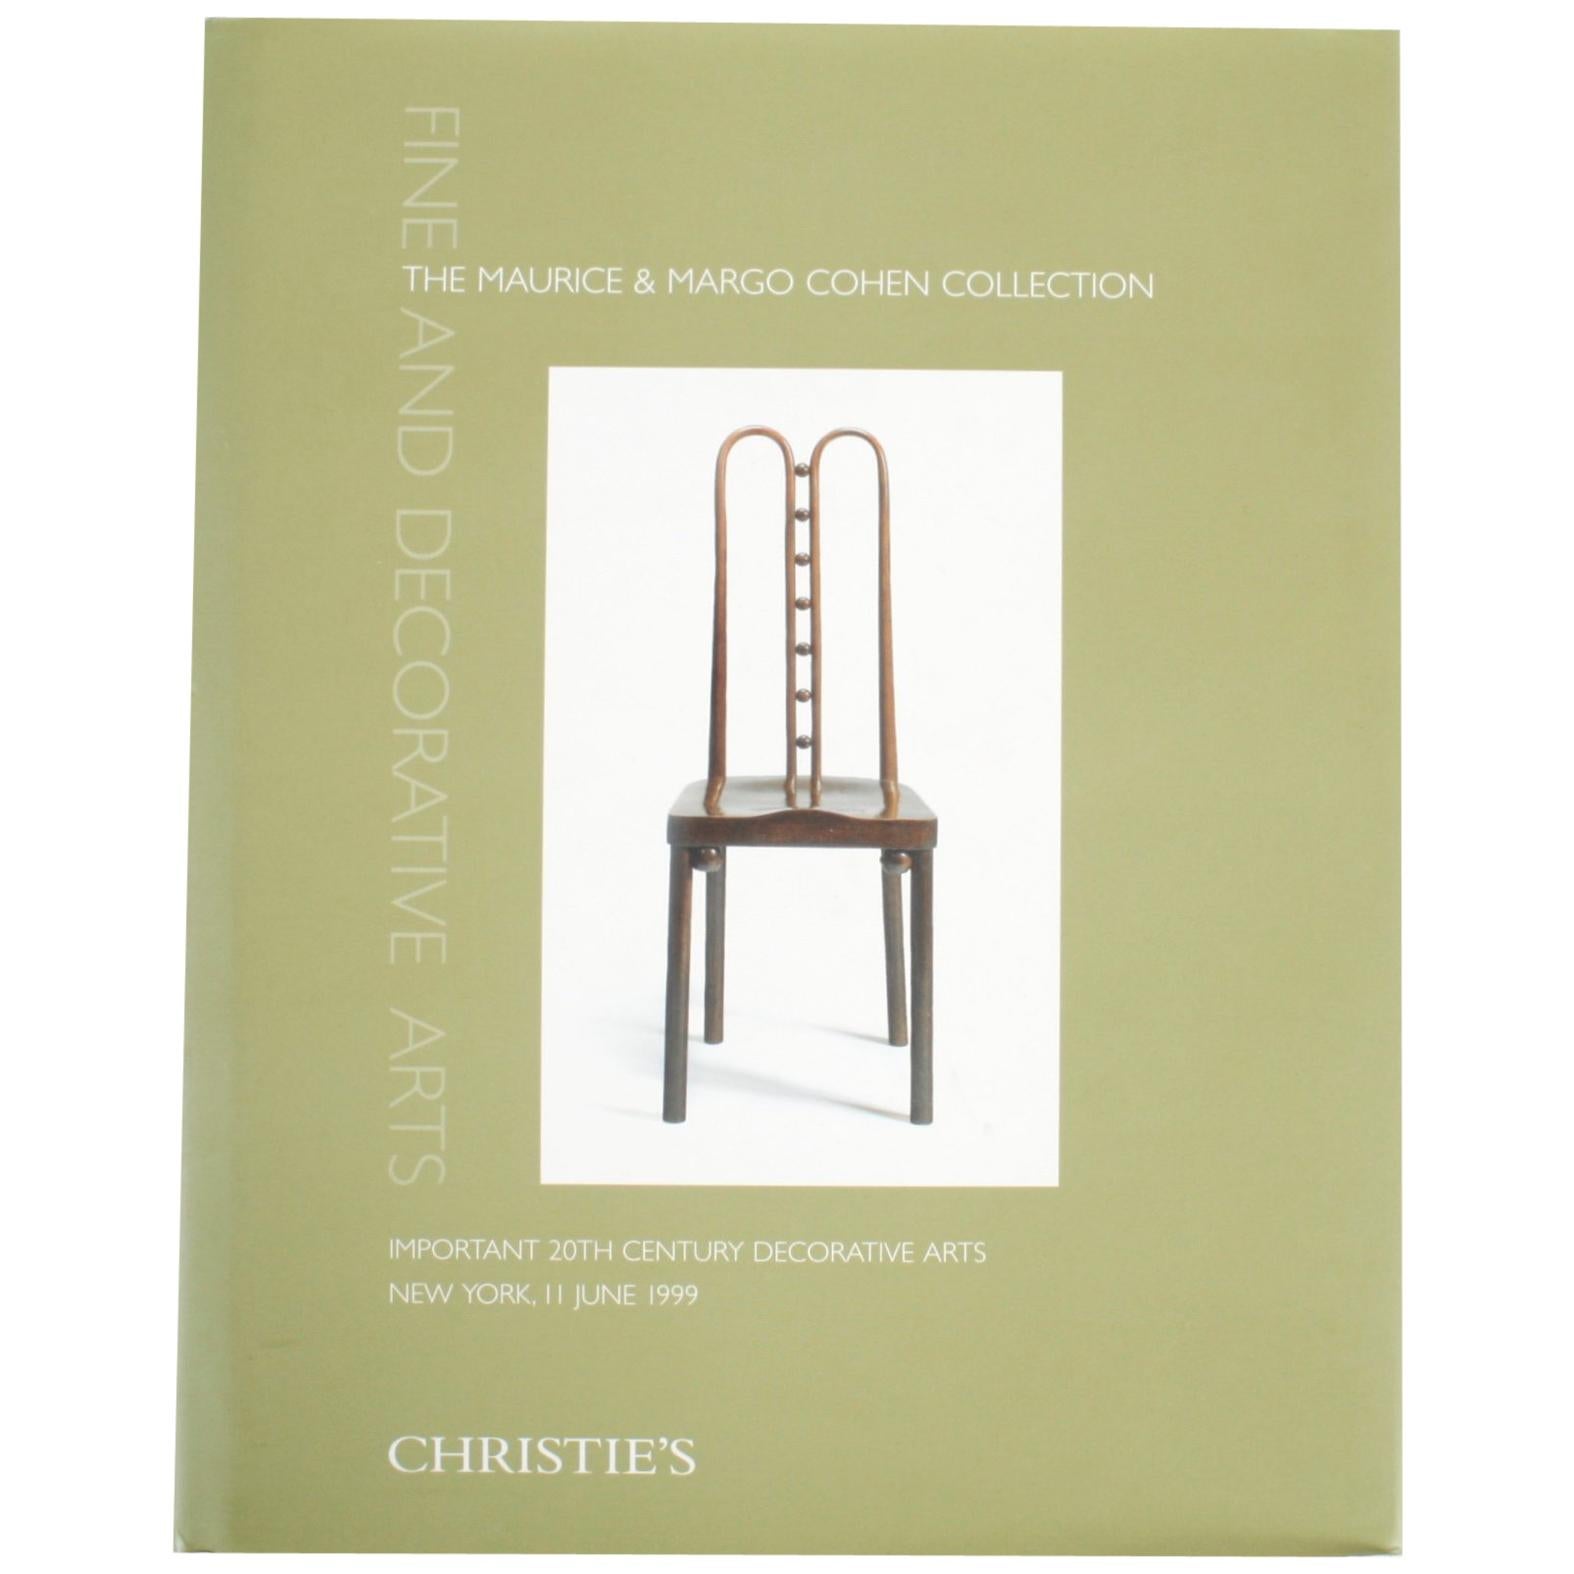 Christie's: Schöne und dekorative Kunst: Die Sammlung Maurice & Margo Cohen, 5/99